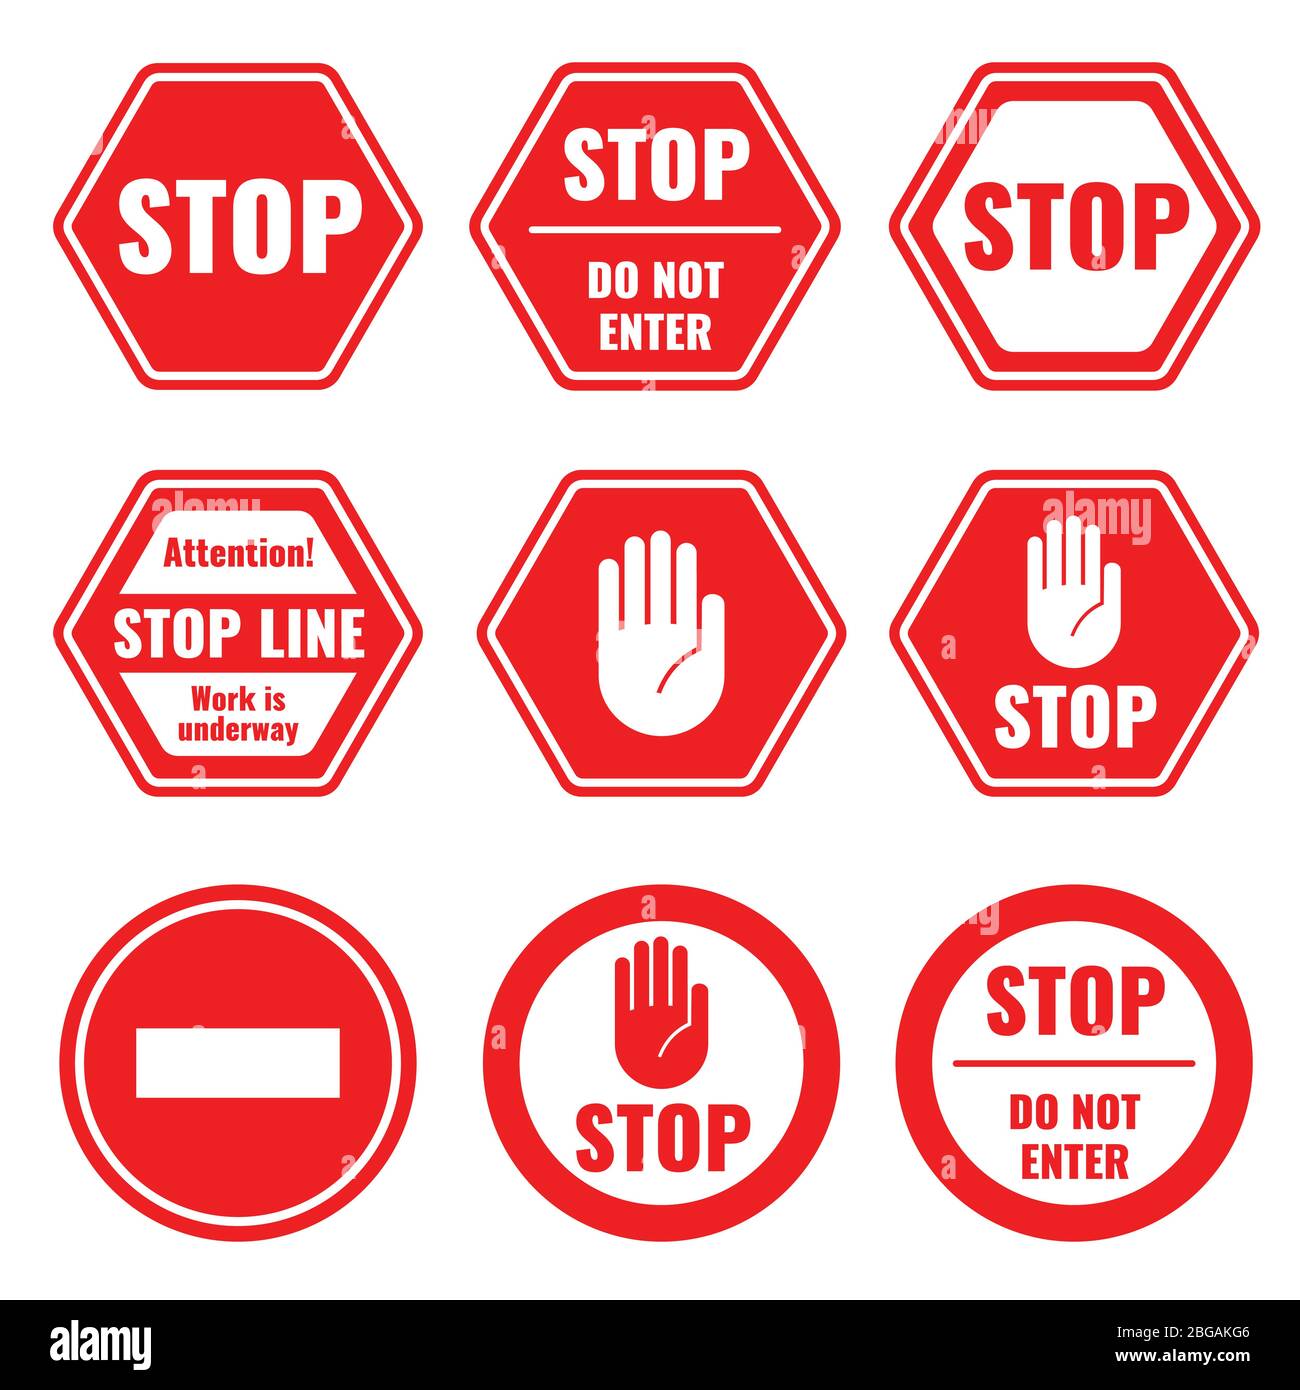 Stop stradale, segnaletica vettoriale limitata e pericolosa isolata. Illustrazione del simbolo di strada e di arresto, avvertenza e attenzione Illustrazione Vettoriale